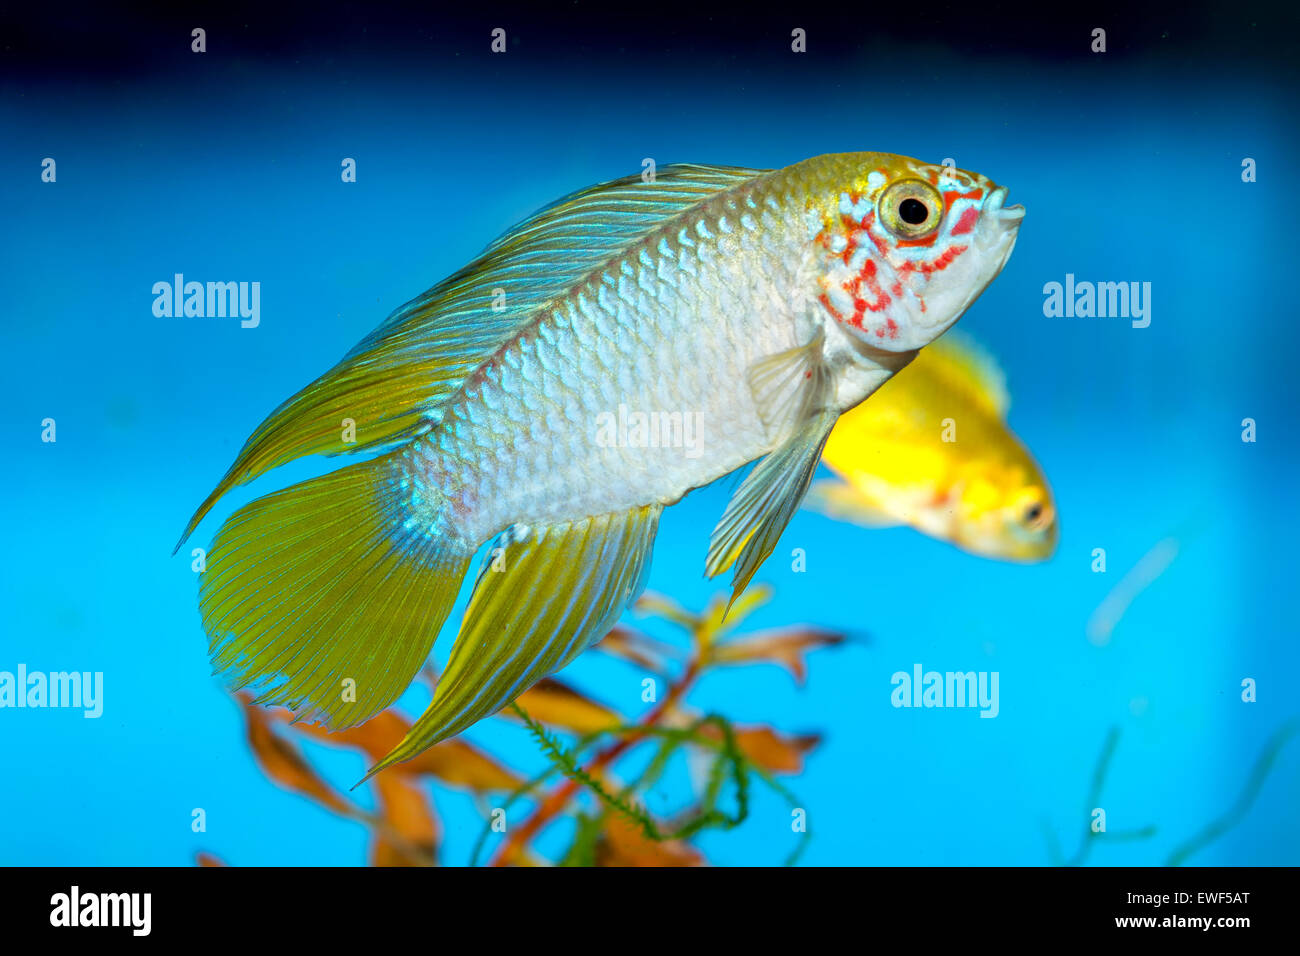 Apistogramma fish in aquarium with blue background. Stock Photo